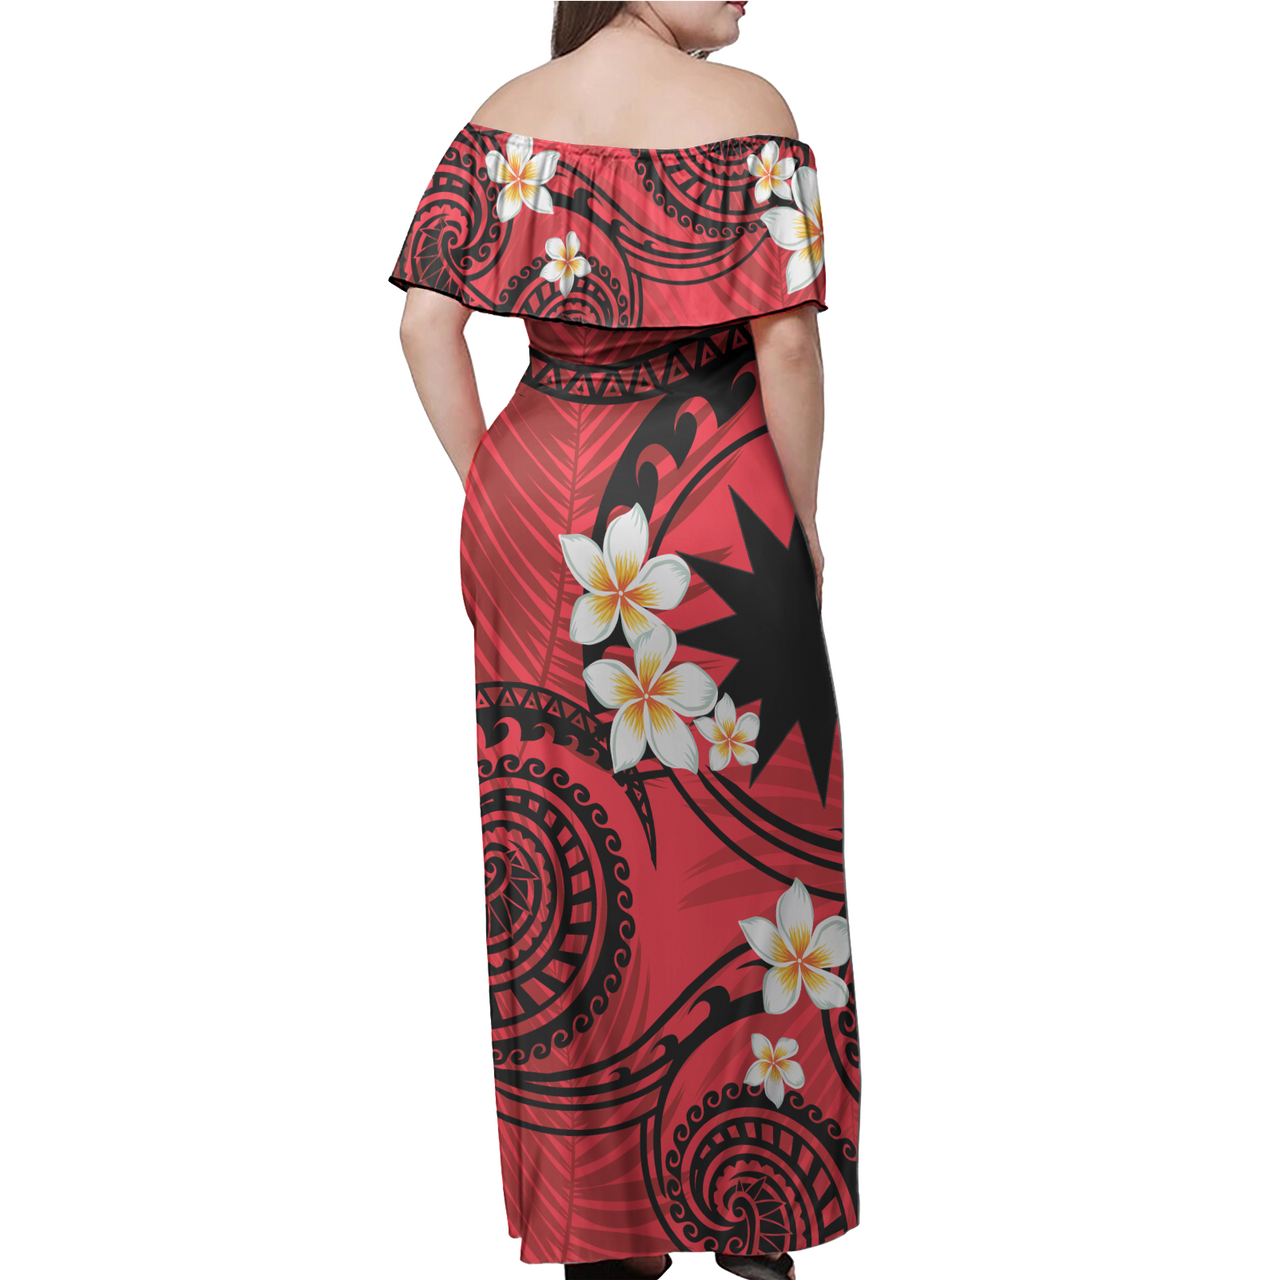 Nauru Off Shoulder Long Dress Plumeria Flowers Tribal Motif Red Version